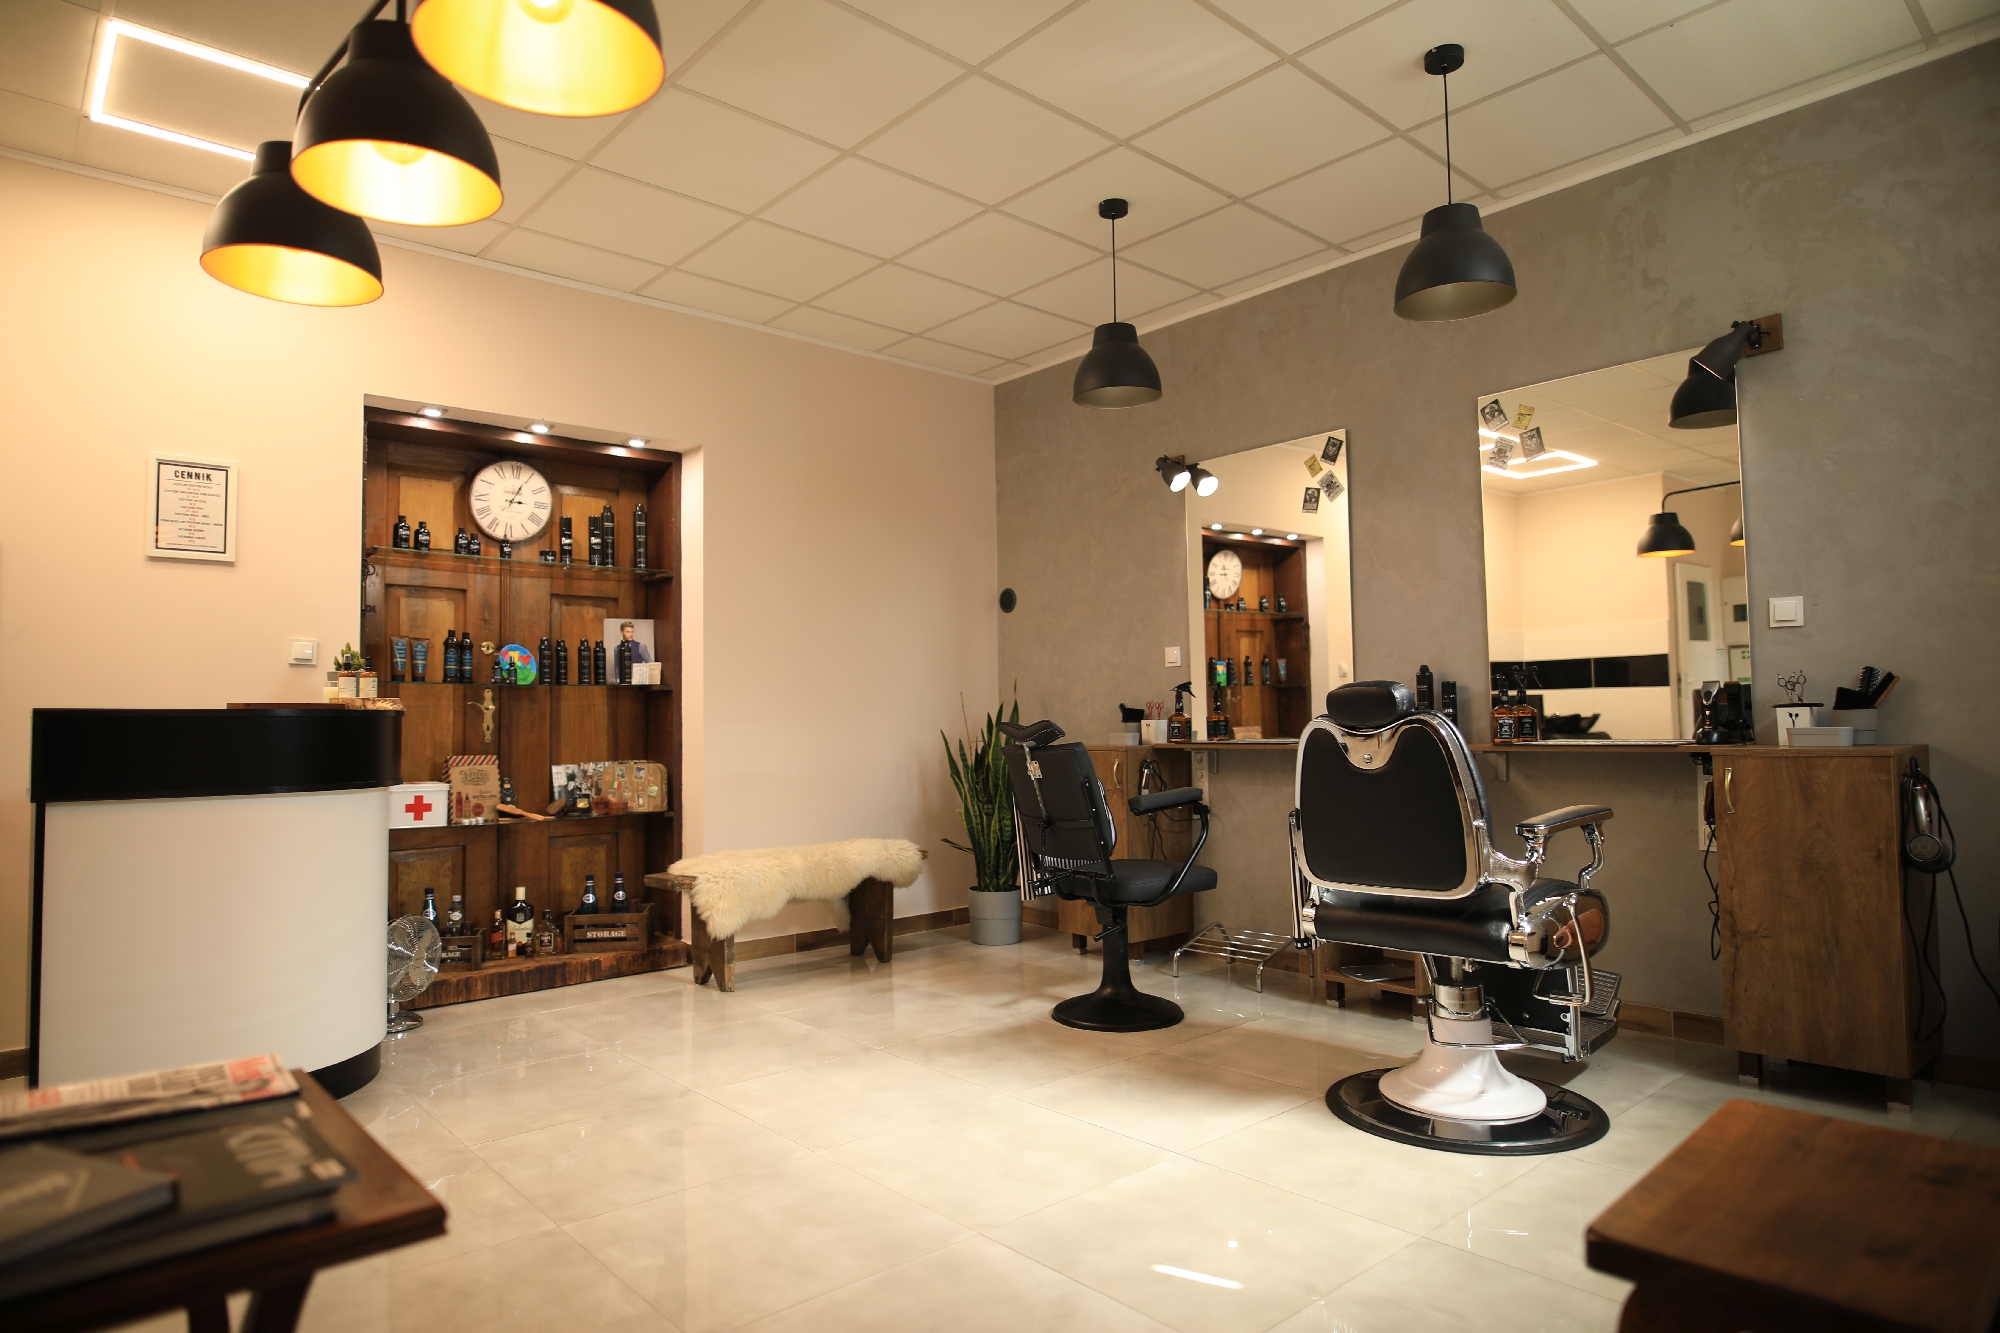 Salon fryzjerski industrialny, jak go pomalować?